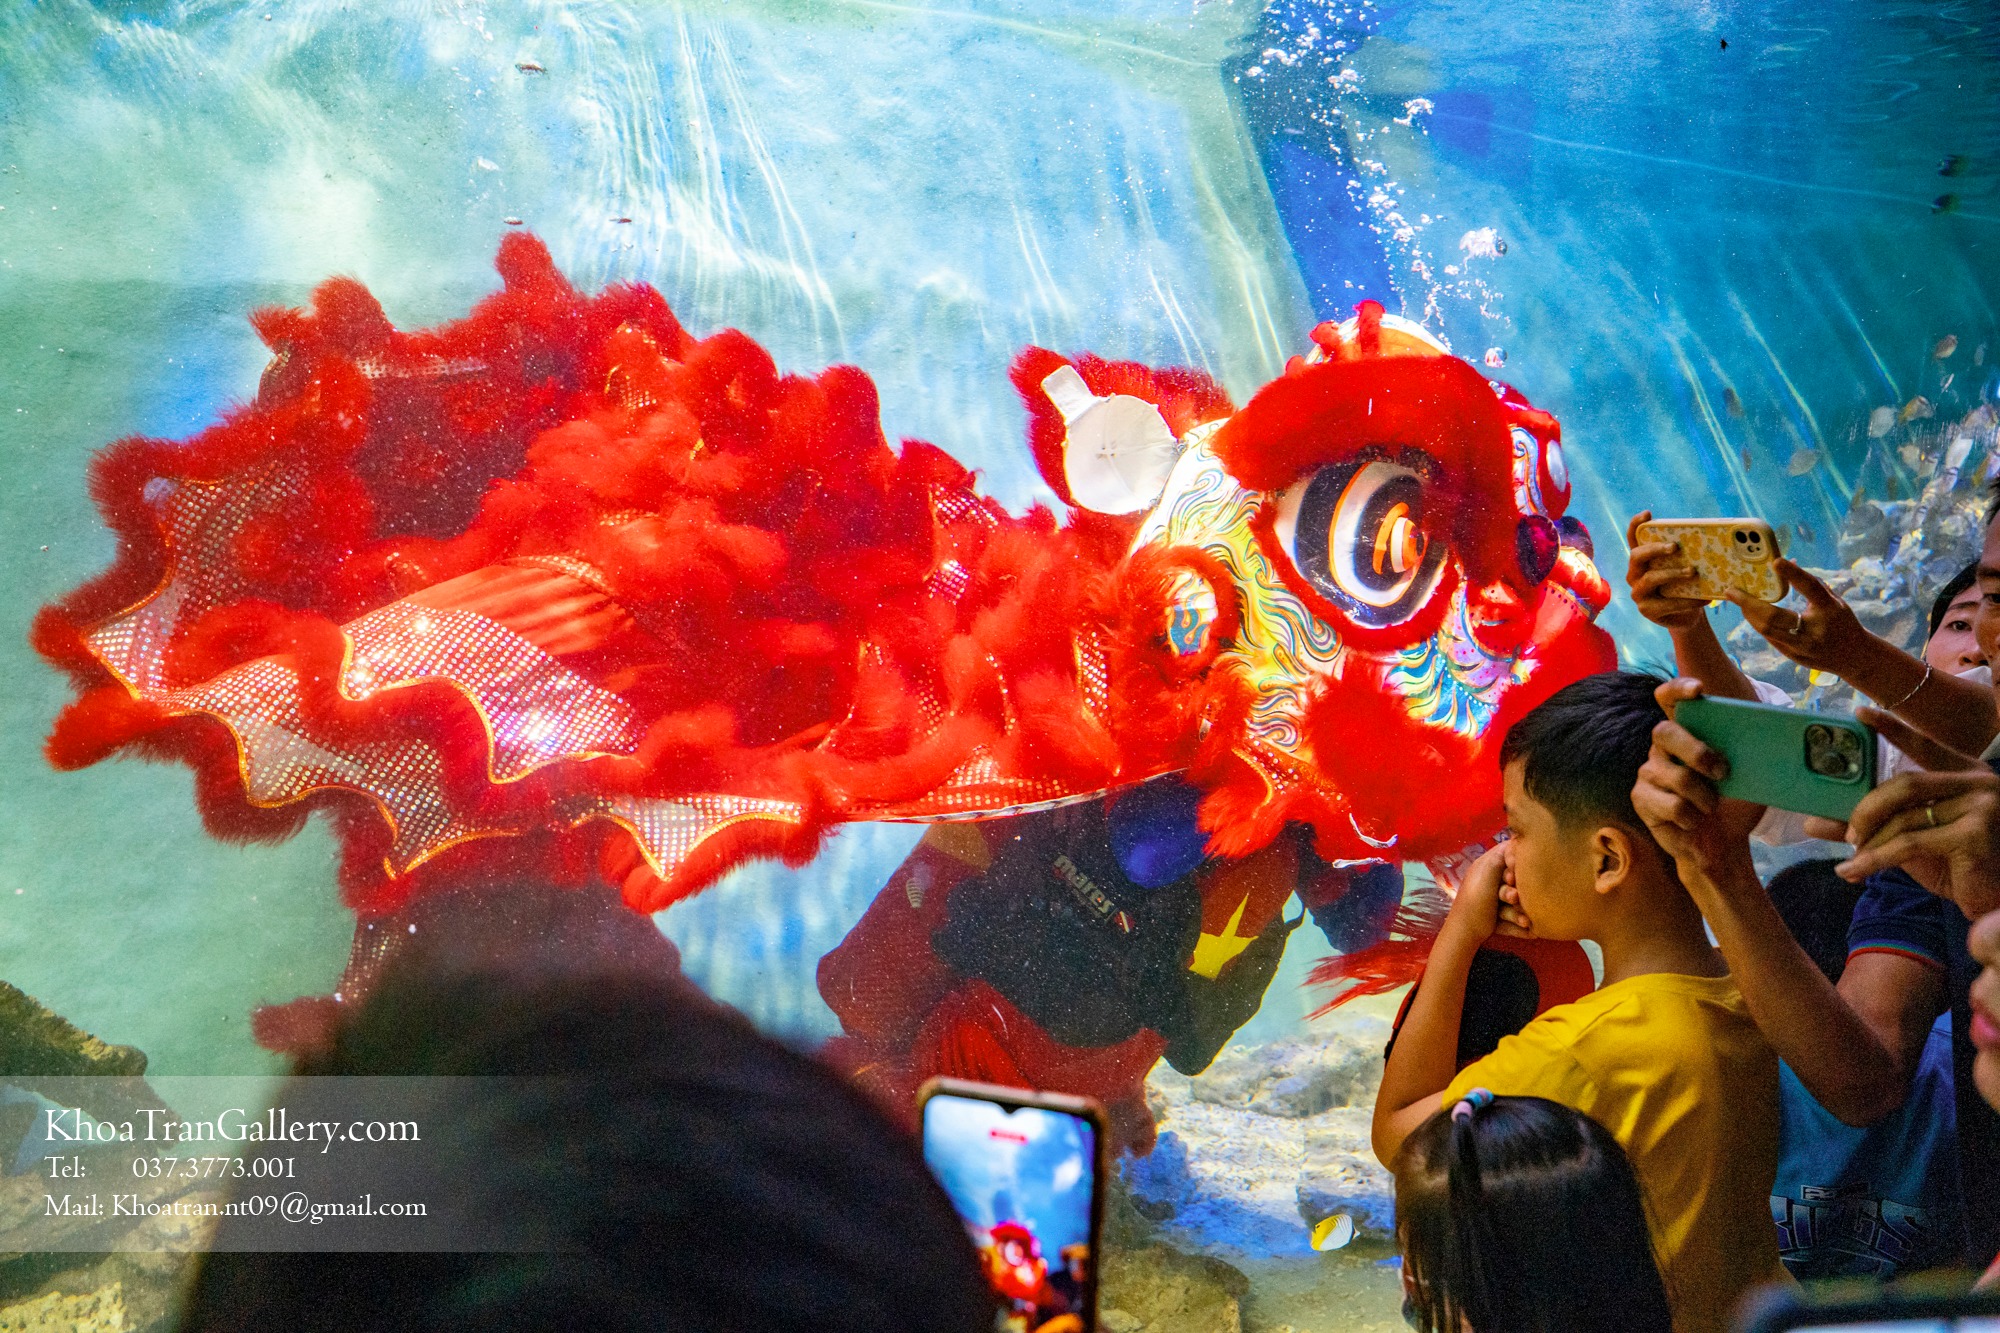 Nơi đầu tiên ở Việt Nam có múa Lân dưới nước, nhiều gia đình chen chân đưa trẻ tới chiêm ngưỡng - Ảnh 5.